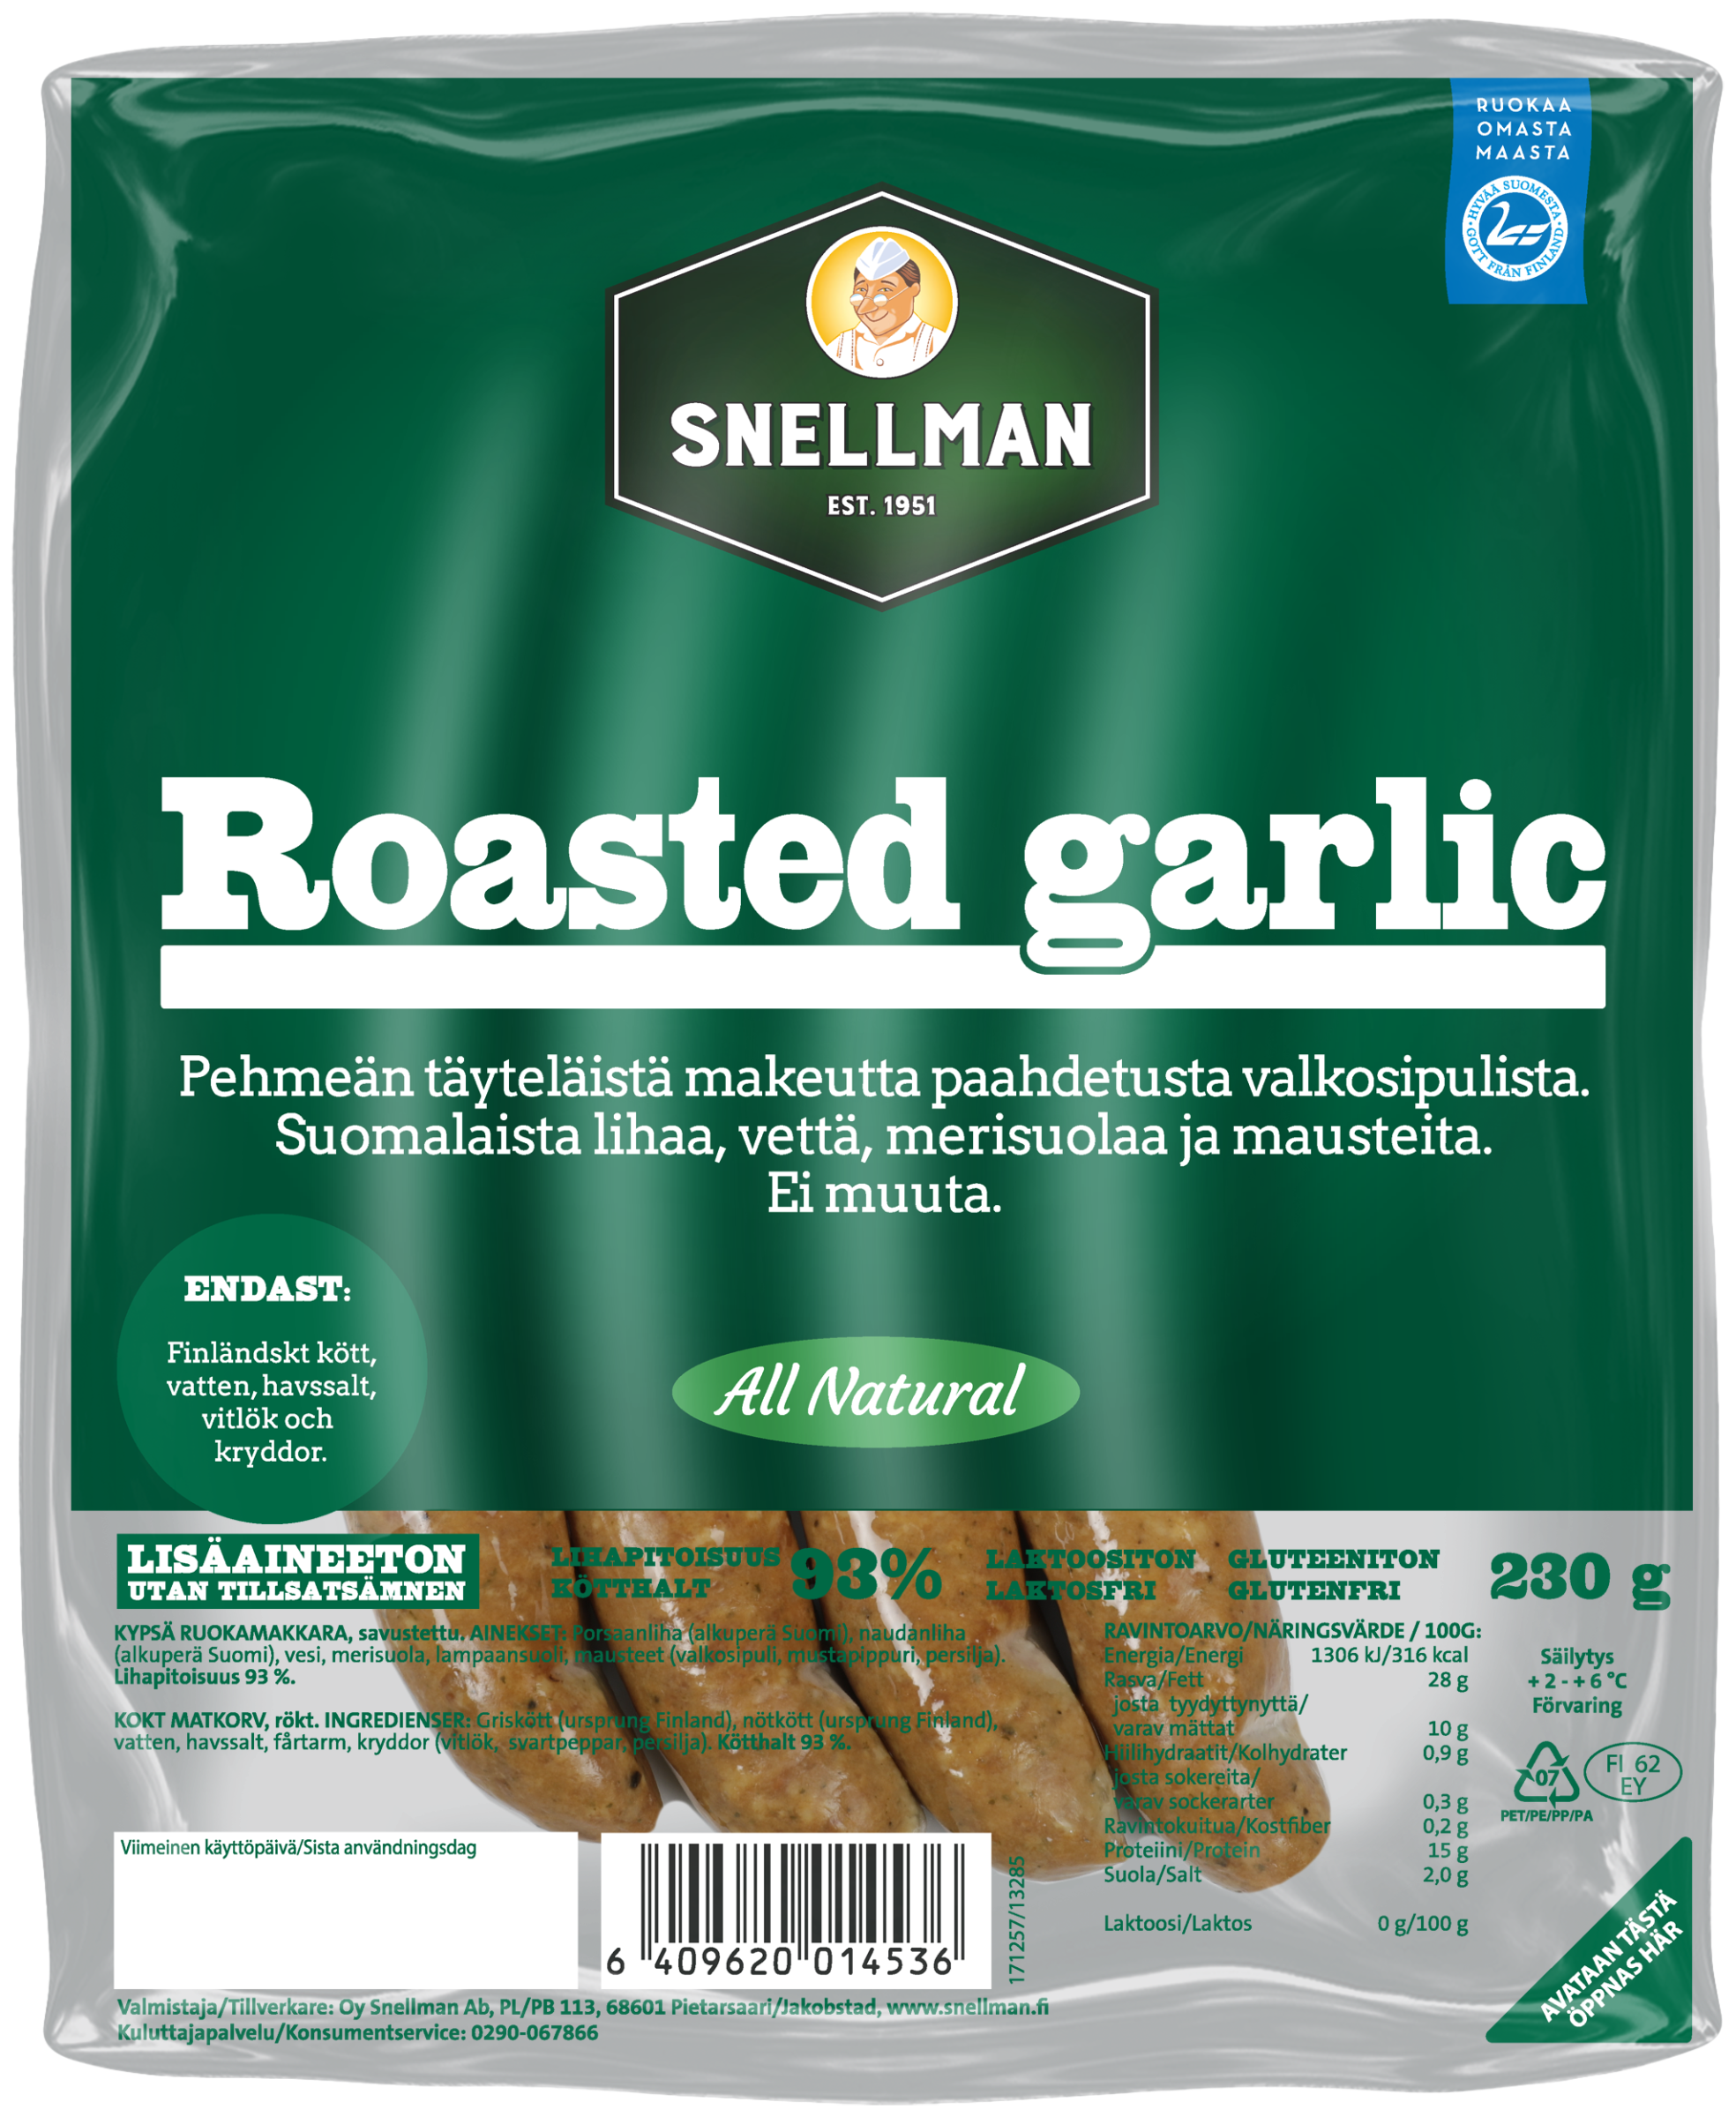 All Natural Roasted Garlic